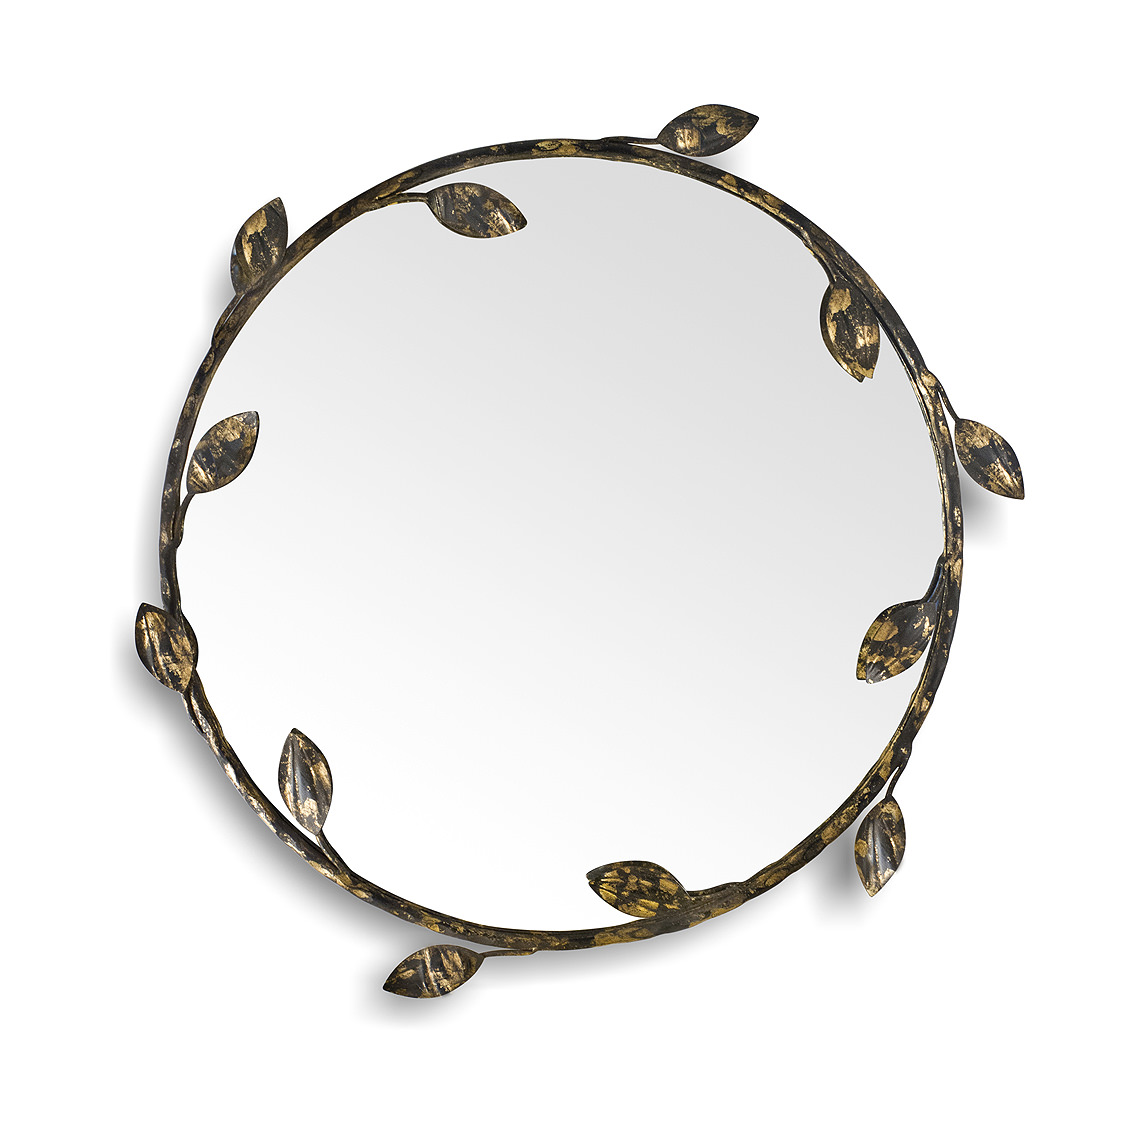 Купить Настенное зеркало Foliage Round Mirror в интернет-магазине roooms.ru